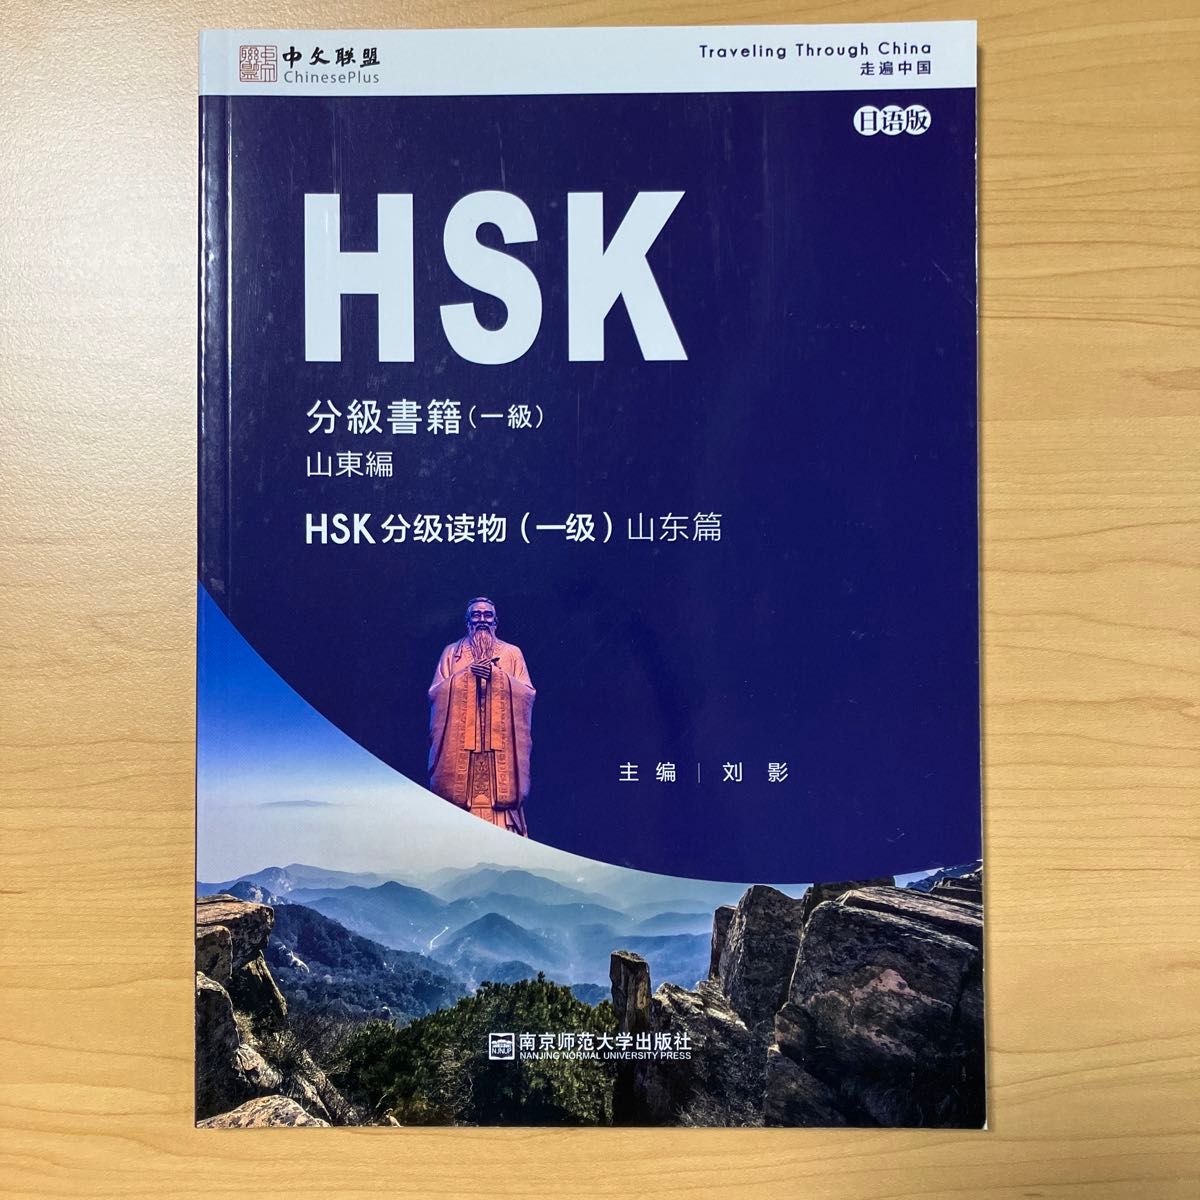 HSK 分級書籍 (一級) 山東編 